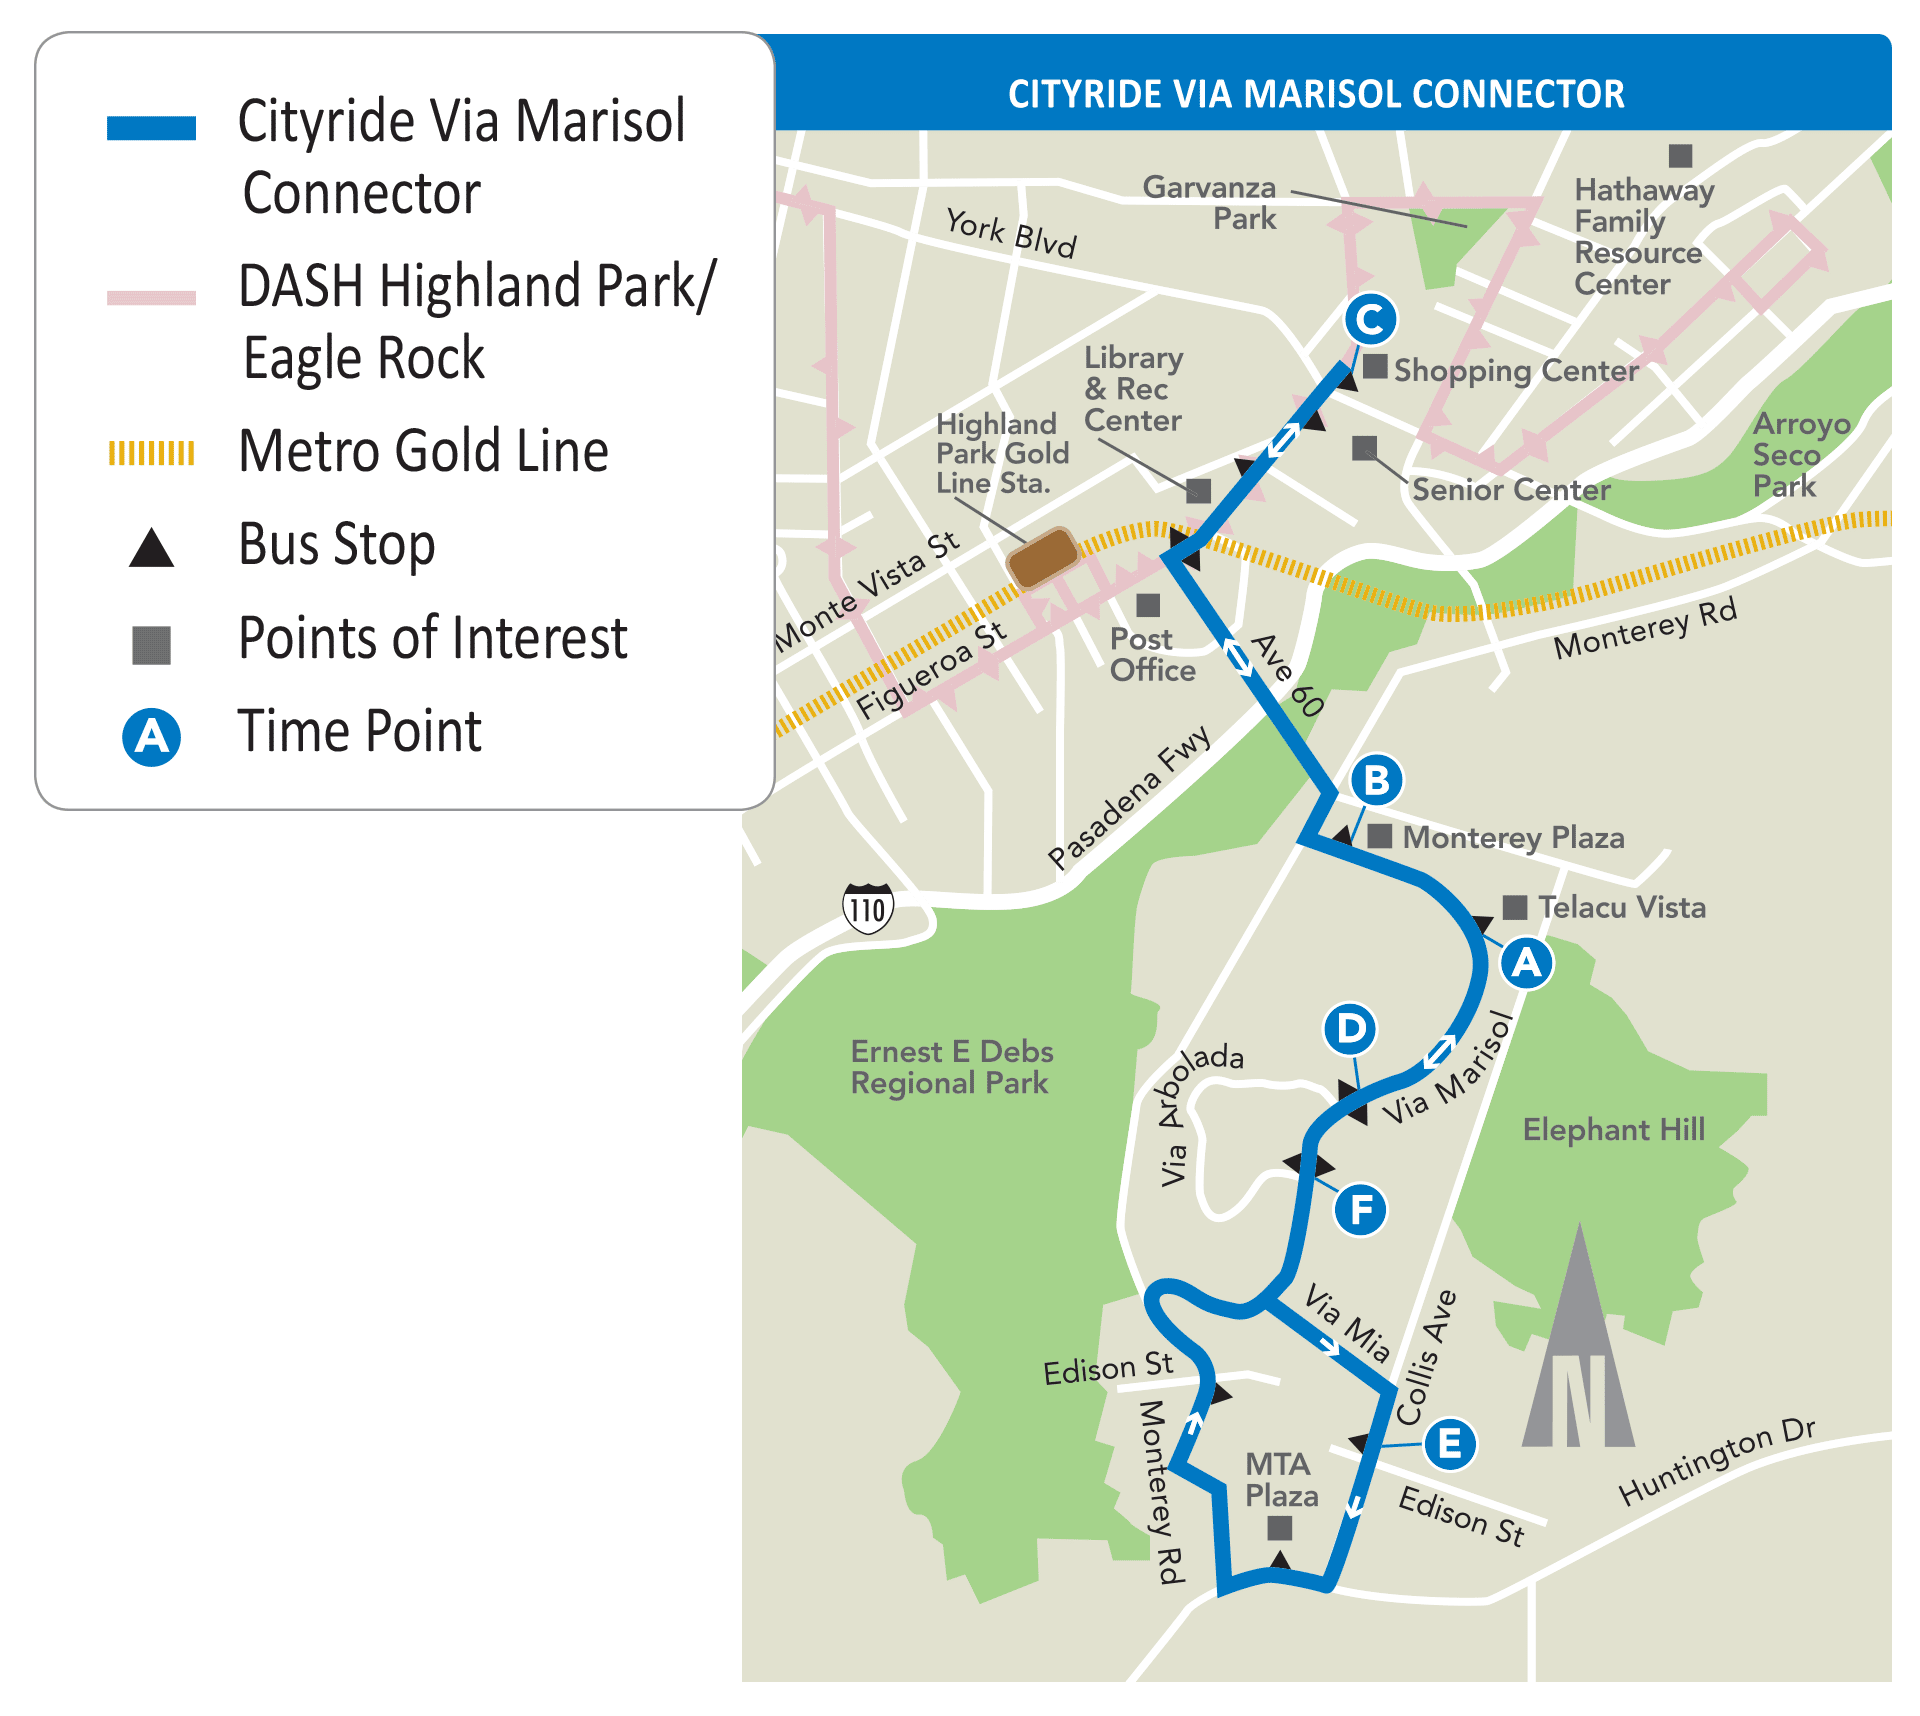 Cityride Via Marisol Connector Map